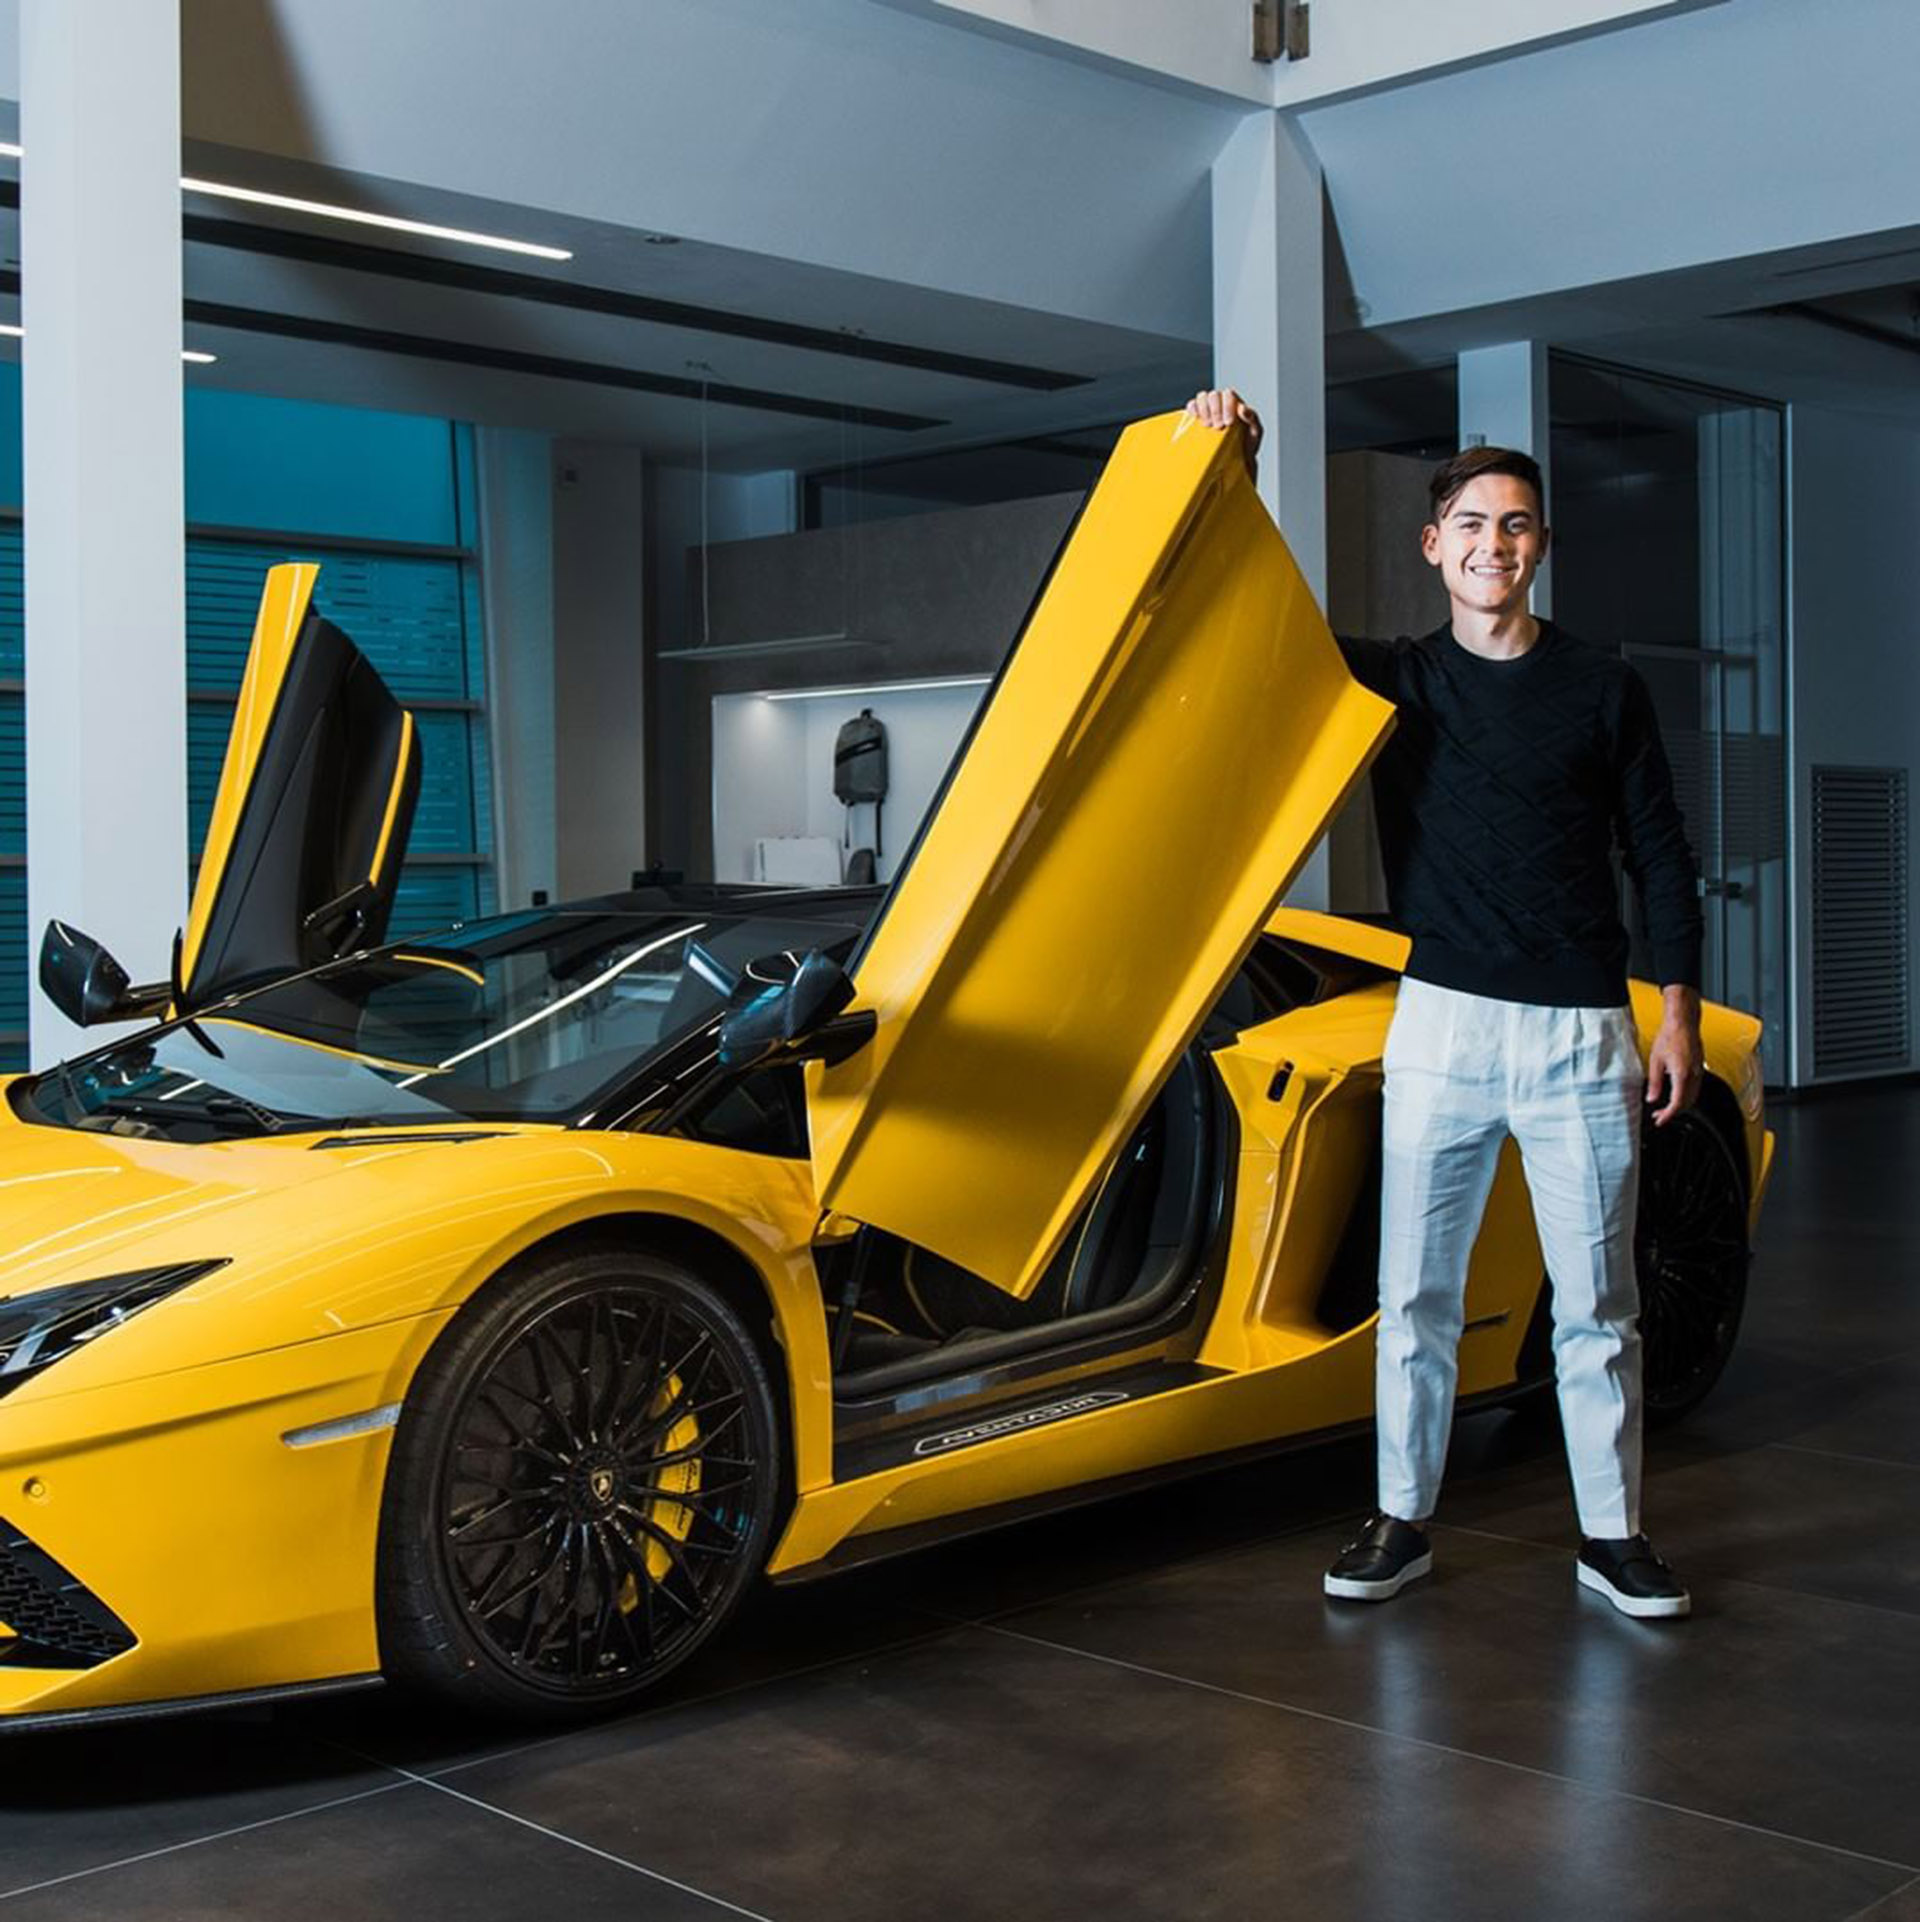 Llega a 350 km/h y cuesta más de medio millón de dólares: el Lamborghini  que compró Dybala por marcar 100 goles en la Juventus - Infobae